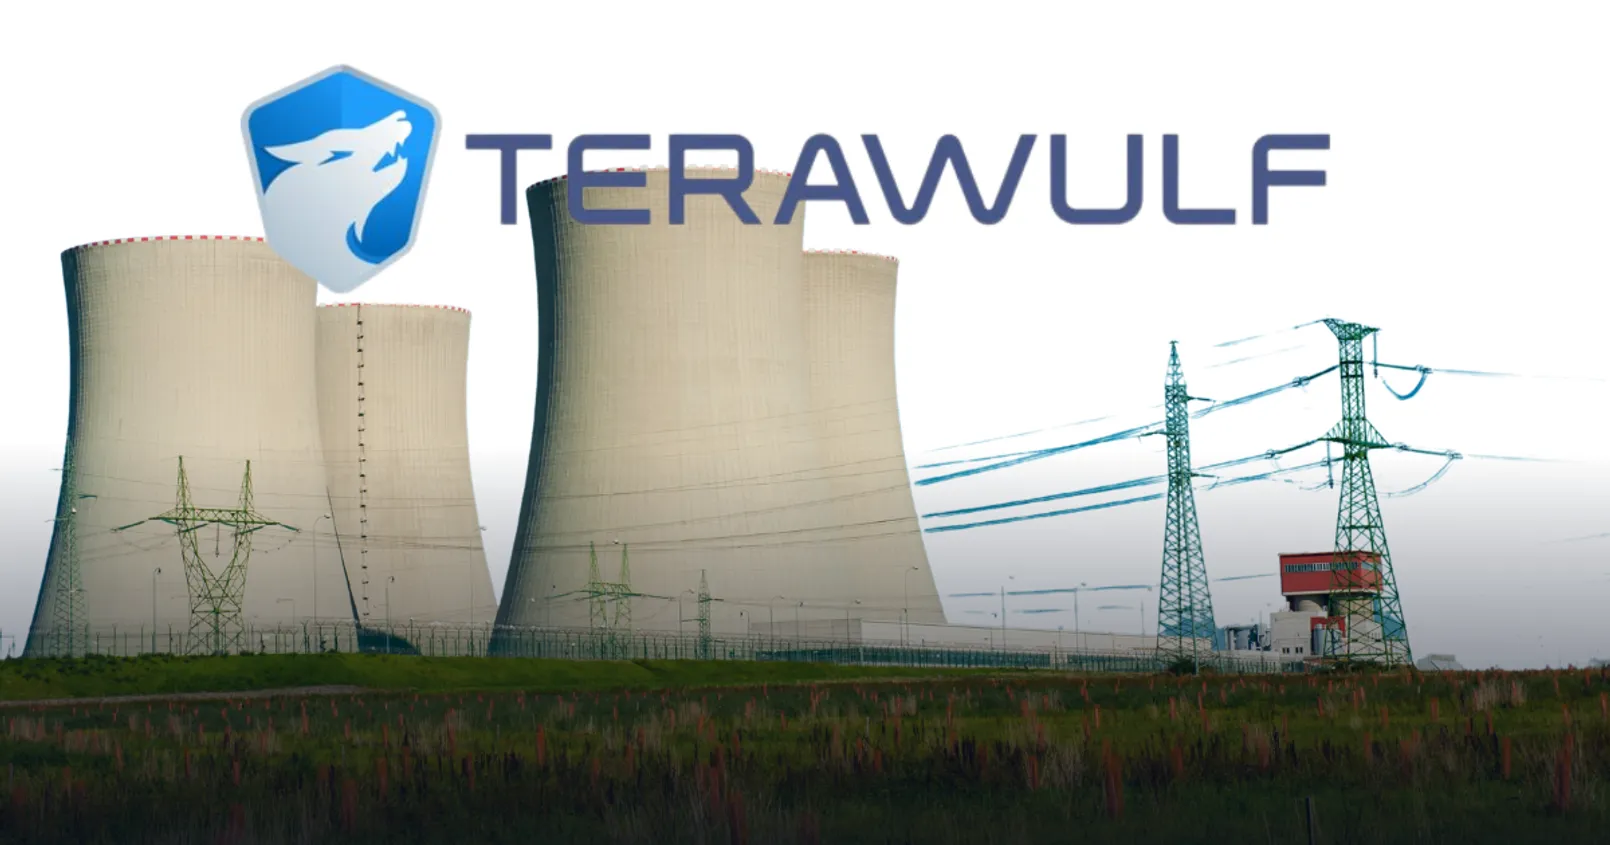 บริษัทเหมืองขุดบิทคอยน์ในสหรัฐ 'Terawulf' เริ่มขุดบิทคอยน์โดยใช้พลังงาน 'นิวเคลียร์'